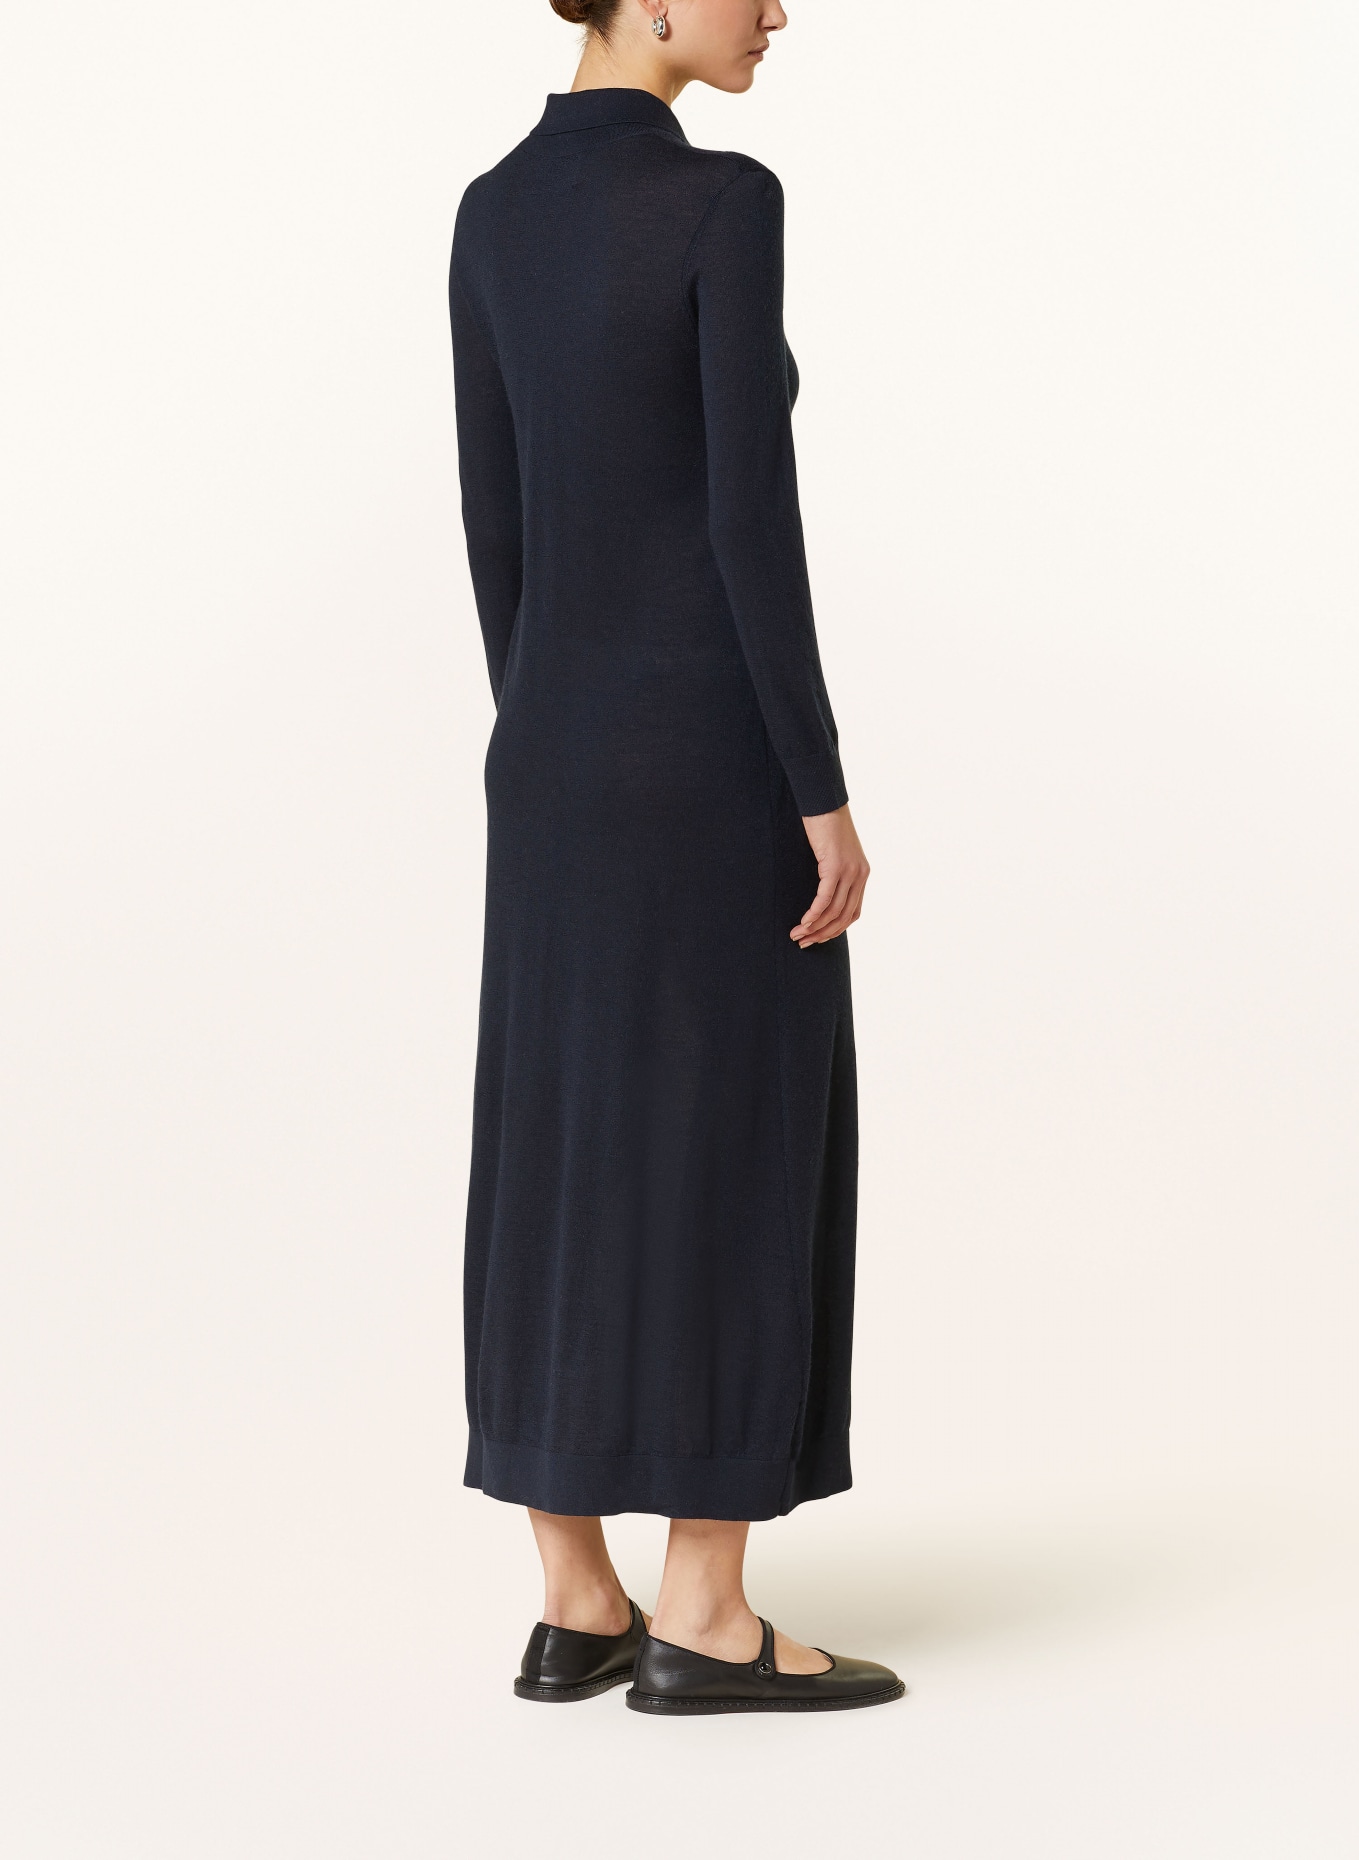 LISA YANG Cashmere knit dress, Color: DARK BLUE (Image 3)